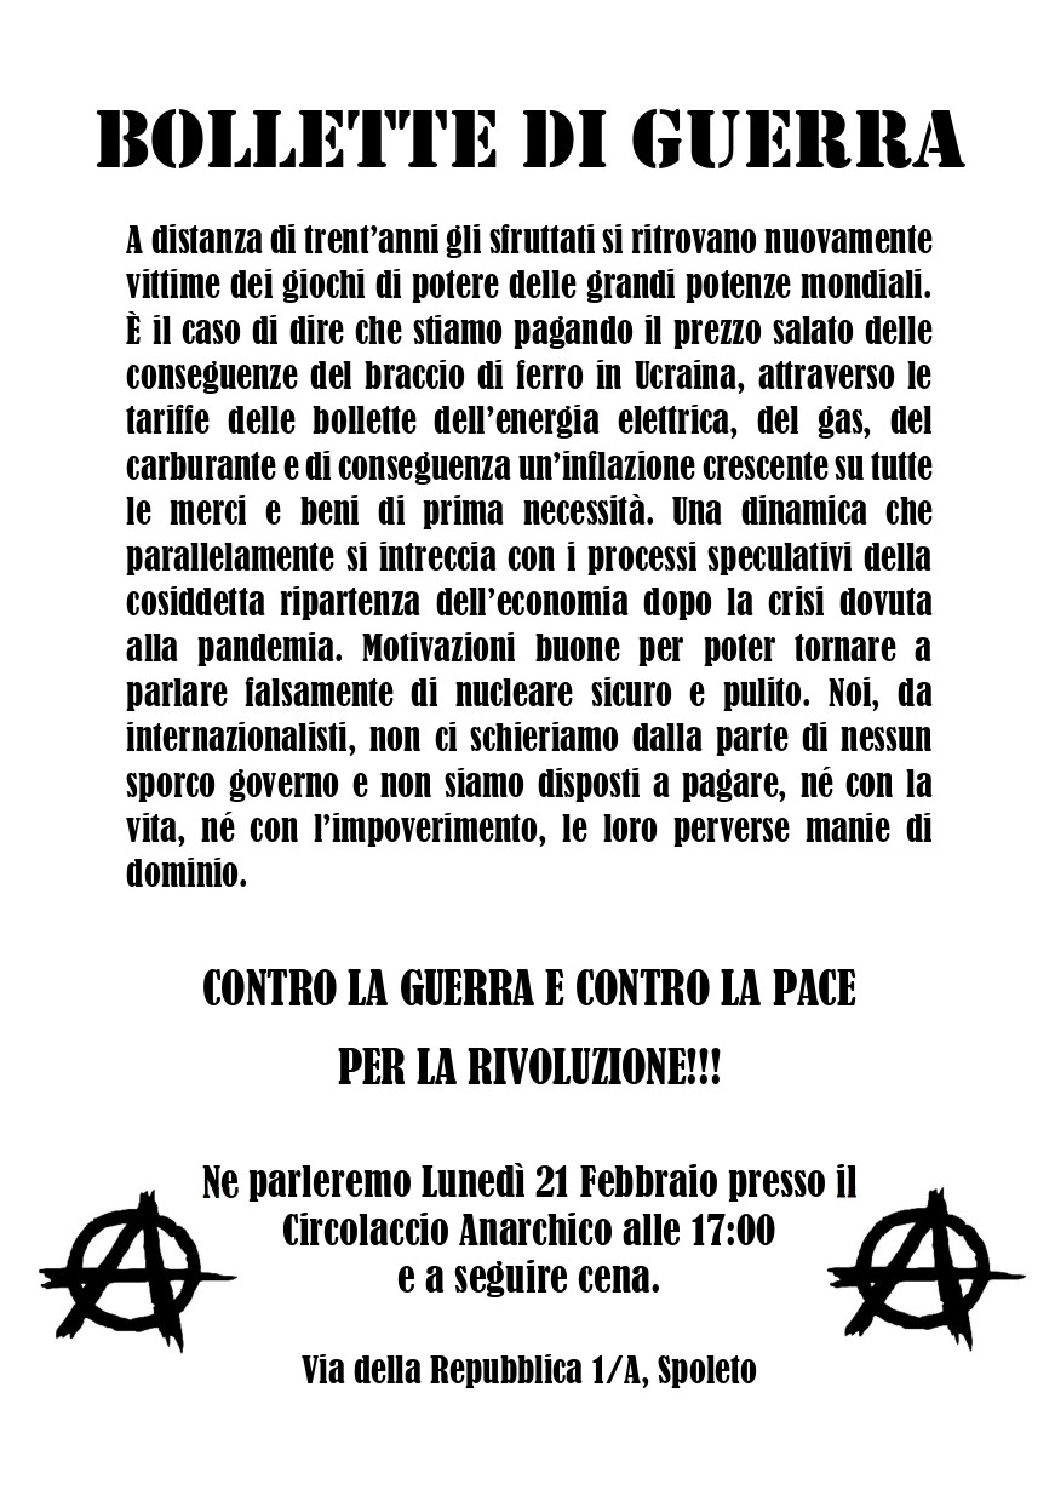 Spoleto, 21 febbraio: Bollette di guerra, iniziativa al Circolaccio Anarchico